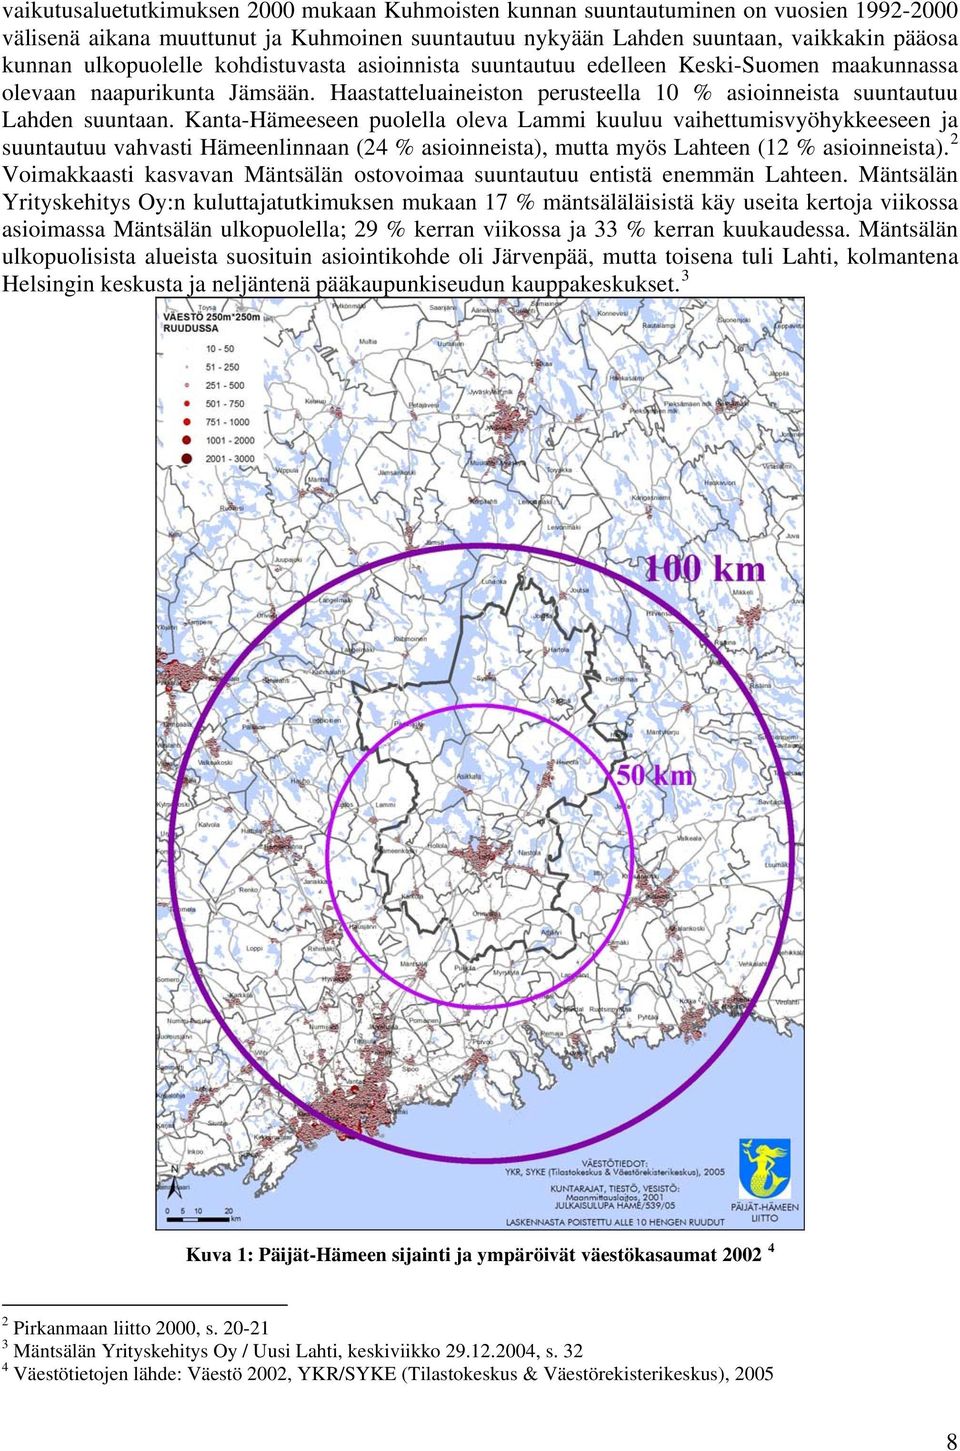 Kanta-Hämeeseen puolella oleva Lammi kuuluu vaihettumisvyöhykkeeseen ja suuntautuu vahvasti Hämeenlinnaan (24 % asioinneista), mutta myös Lahteen (12 % asioinneista).